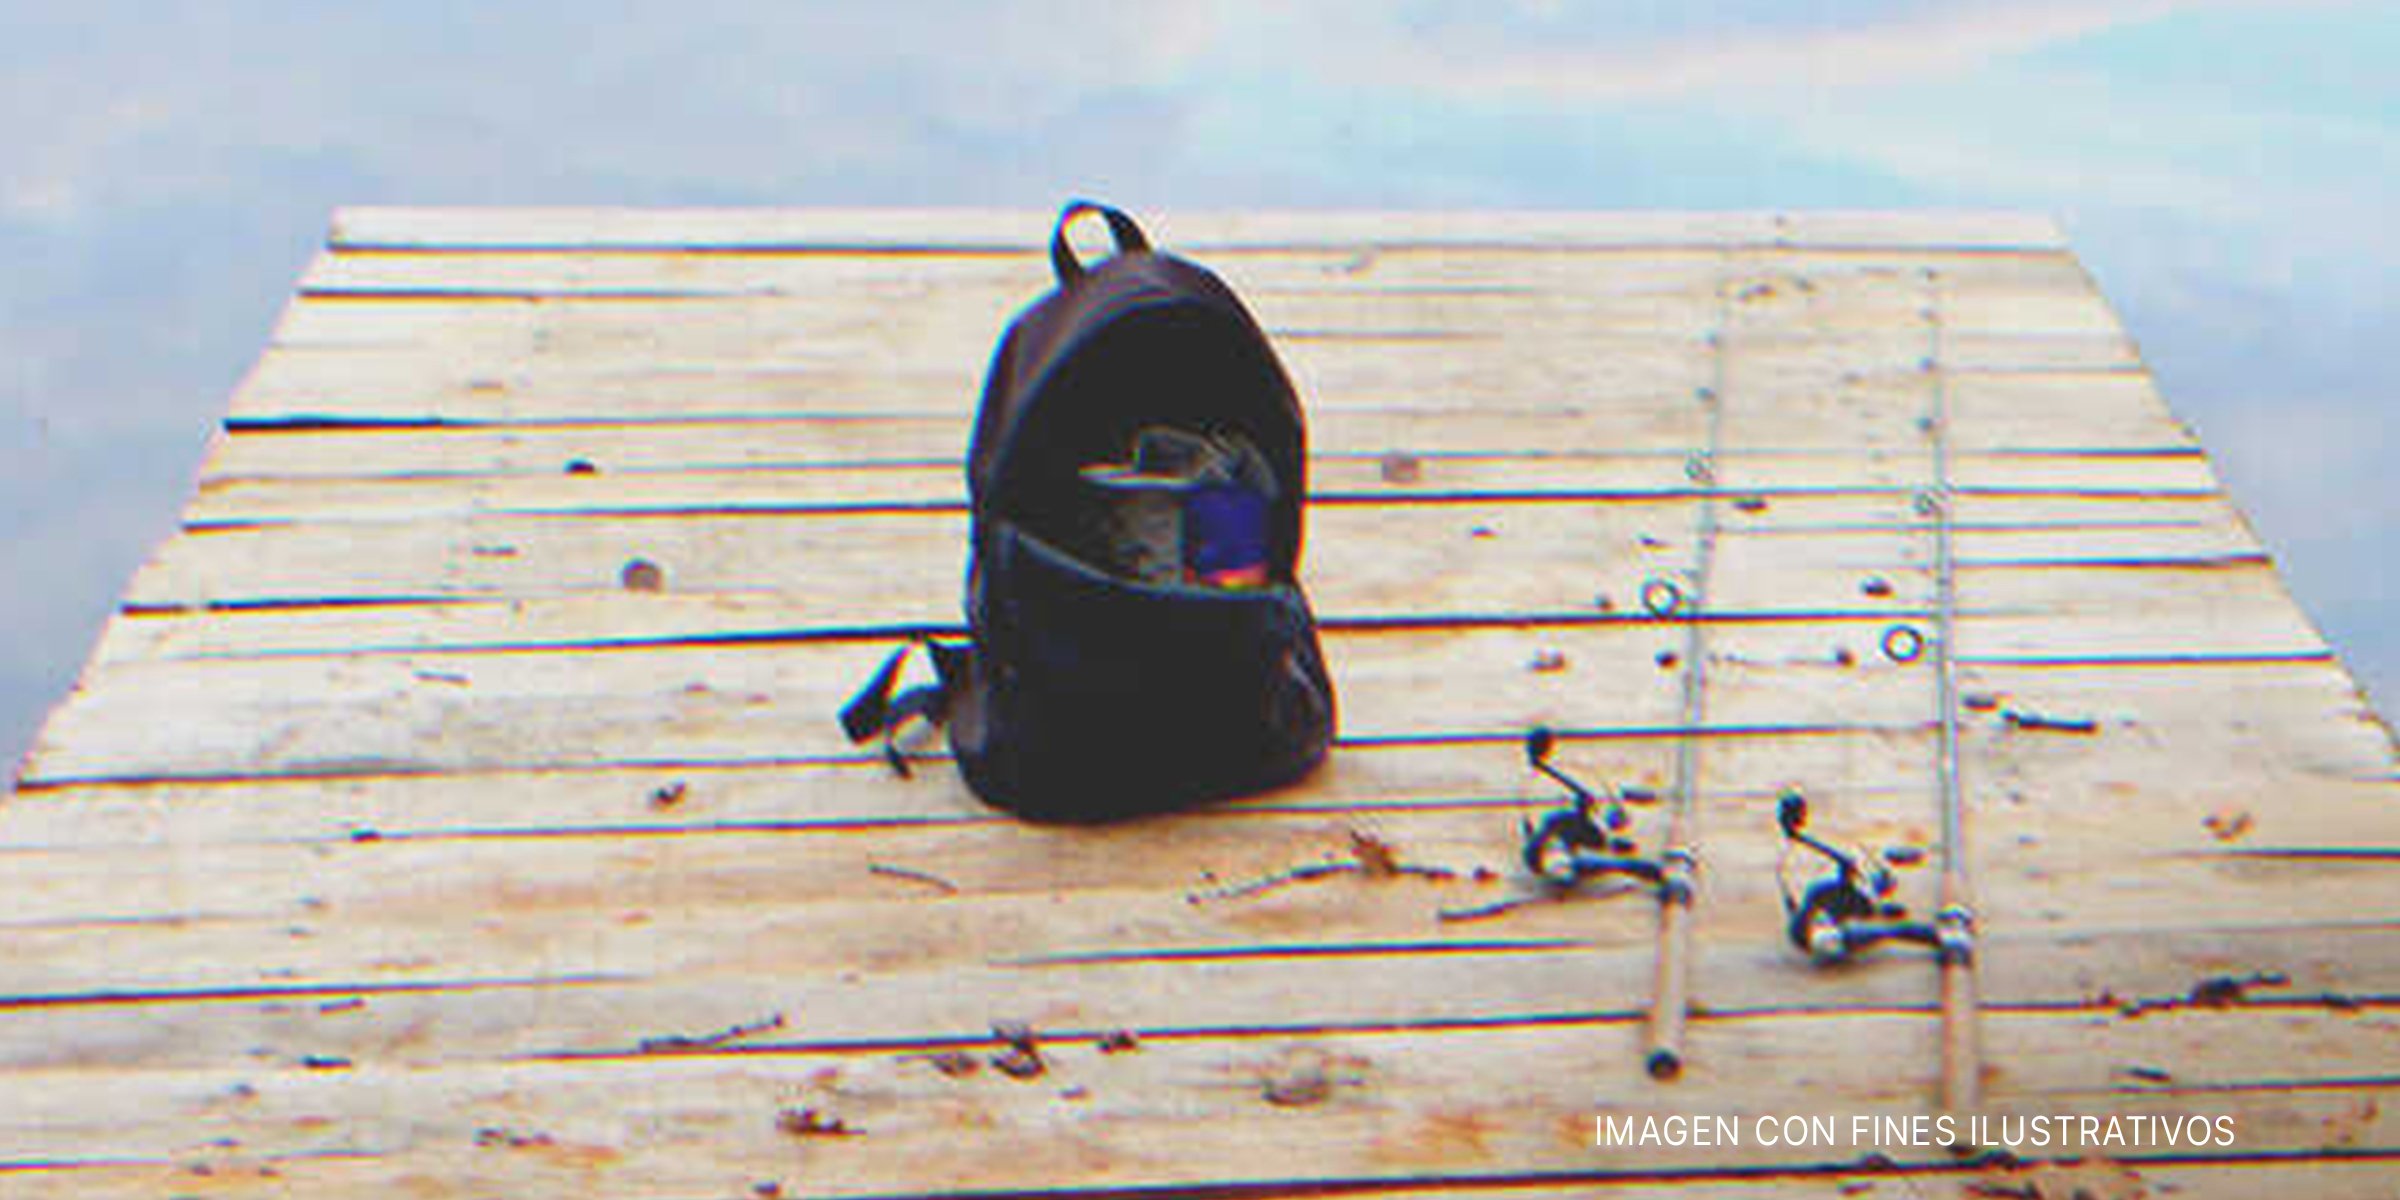 Unas cañas de pescar y una mochila sobre una plataforma de madera. | Foto: Shutterstock